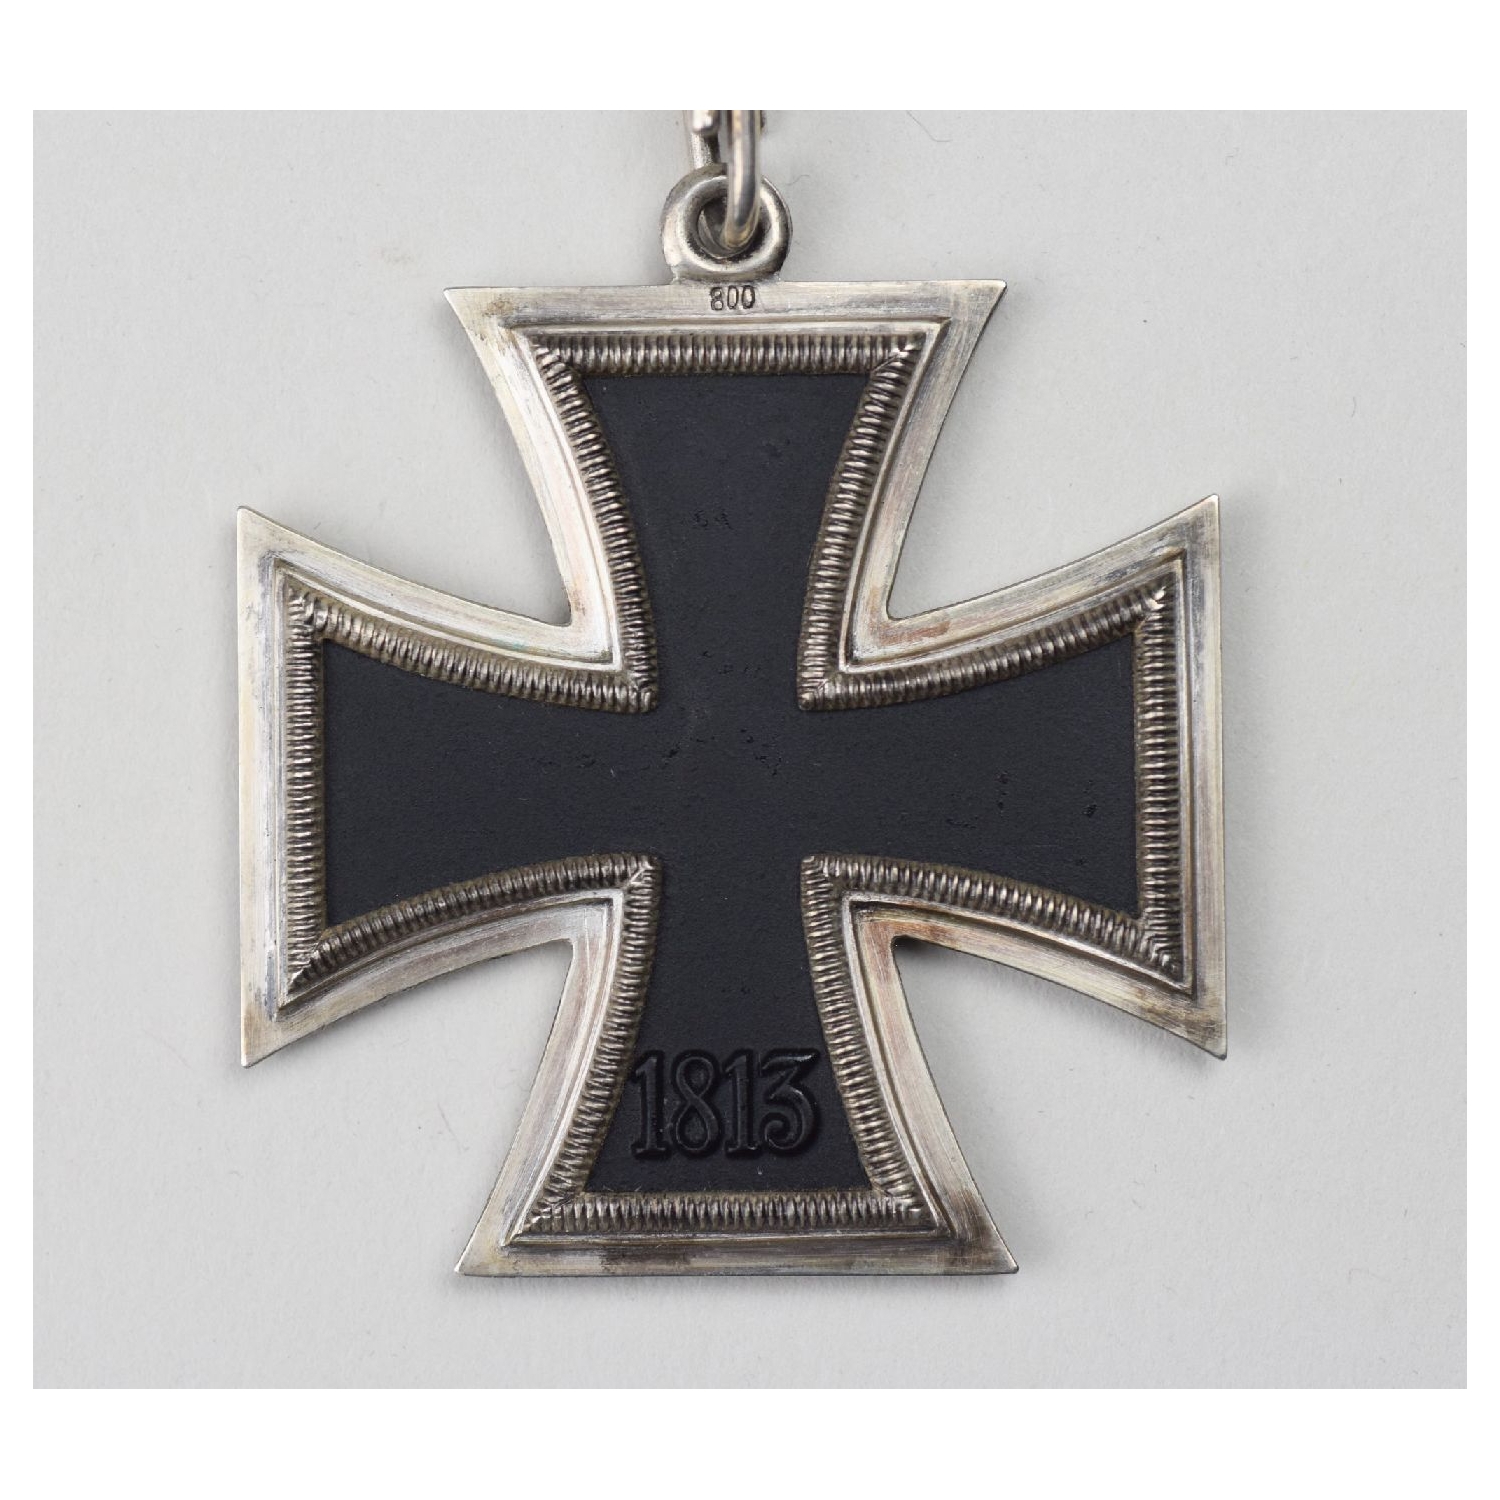 Ritterkreuz des Eisernen Kreuzes Herst.65 Type 1 in Mint Condition